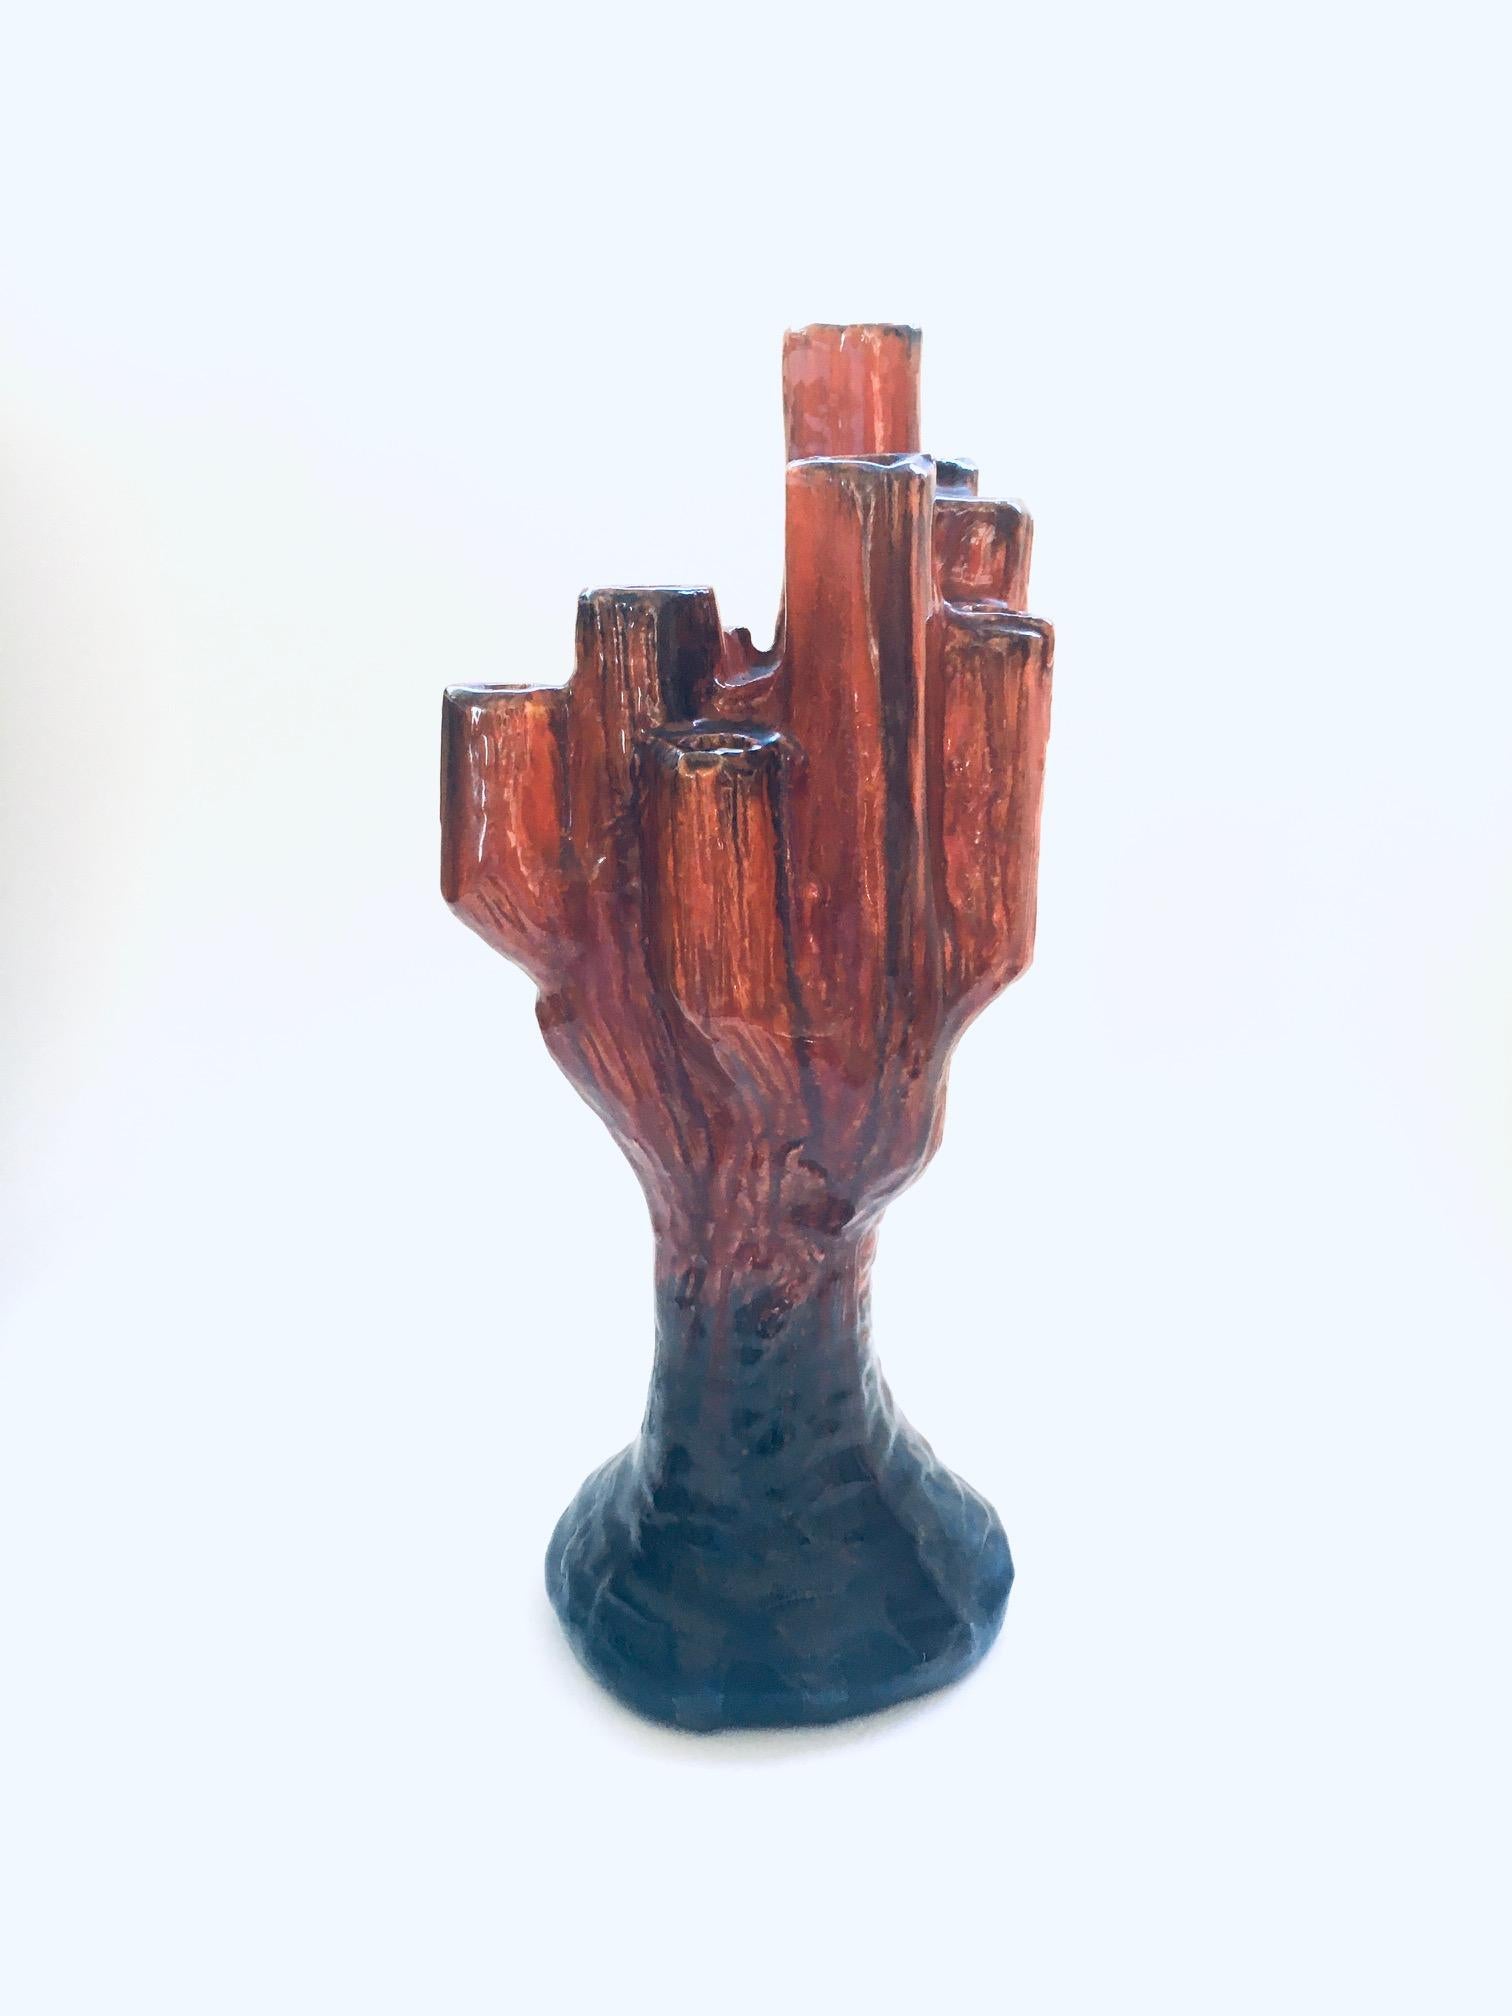 Vintage Midcentury Studio Art Pottery Keramik Kerzenhalter Kaktus geformt Kunstobjekt, signiert F.B. Hergestellt in den 1960er Jahren. Braun und orange glasiertes Keramikobjekt in freier Form, das zum Halten von Kerzen verwendet werden kann. In sehr